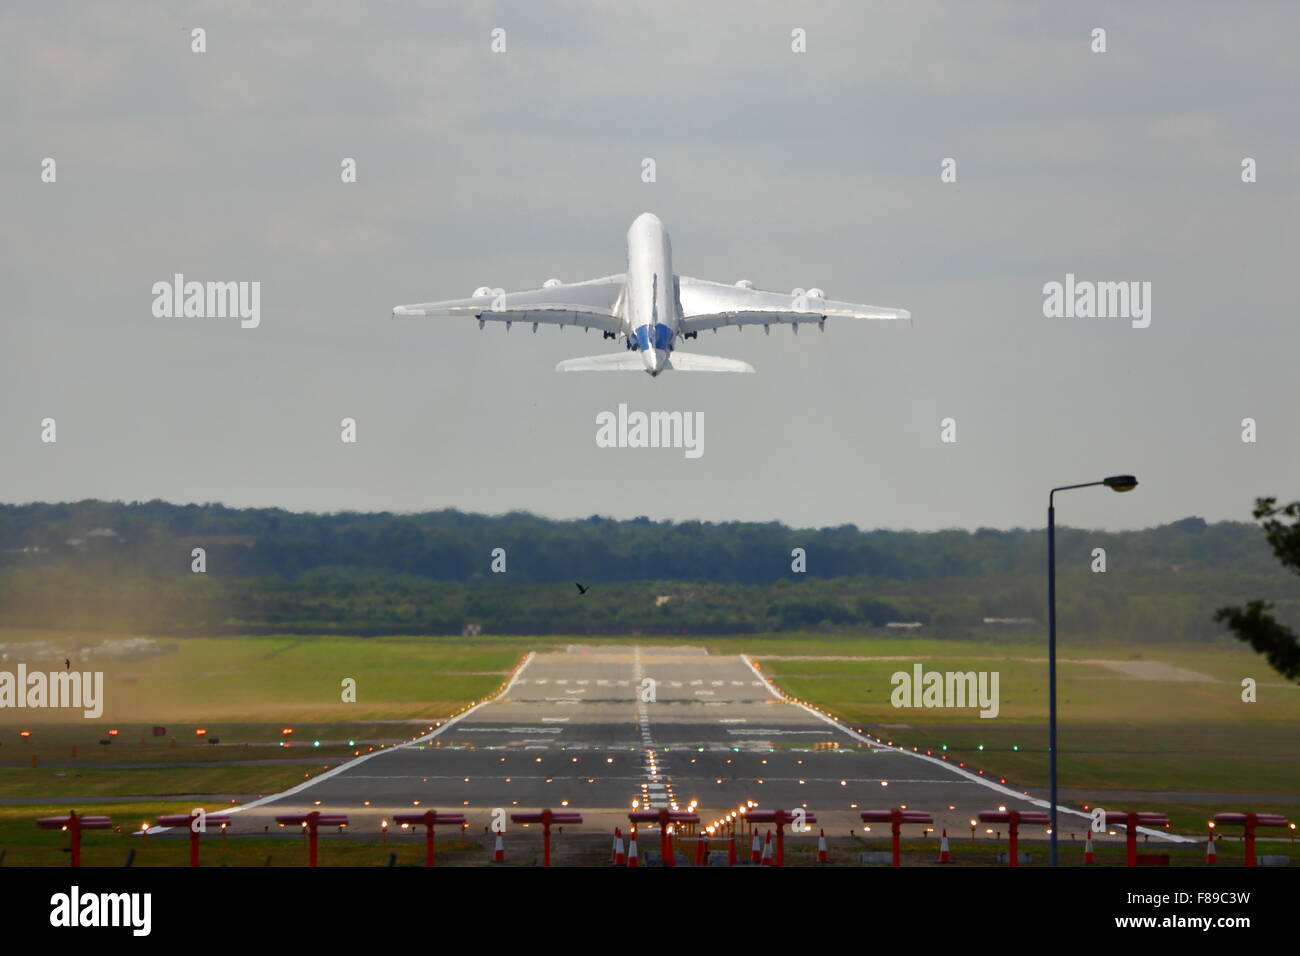 An Airbus A380 taking off at Farnborough Air Show 2014 Stock Photo